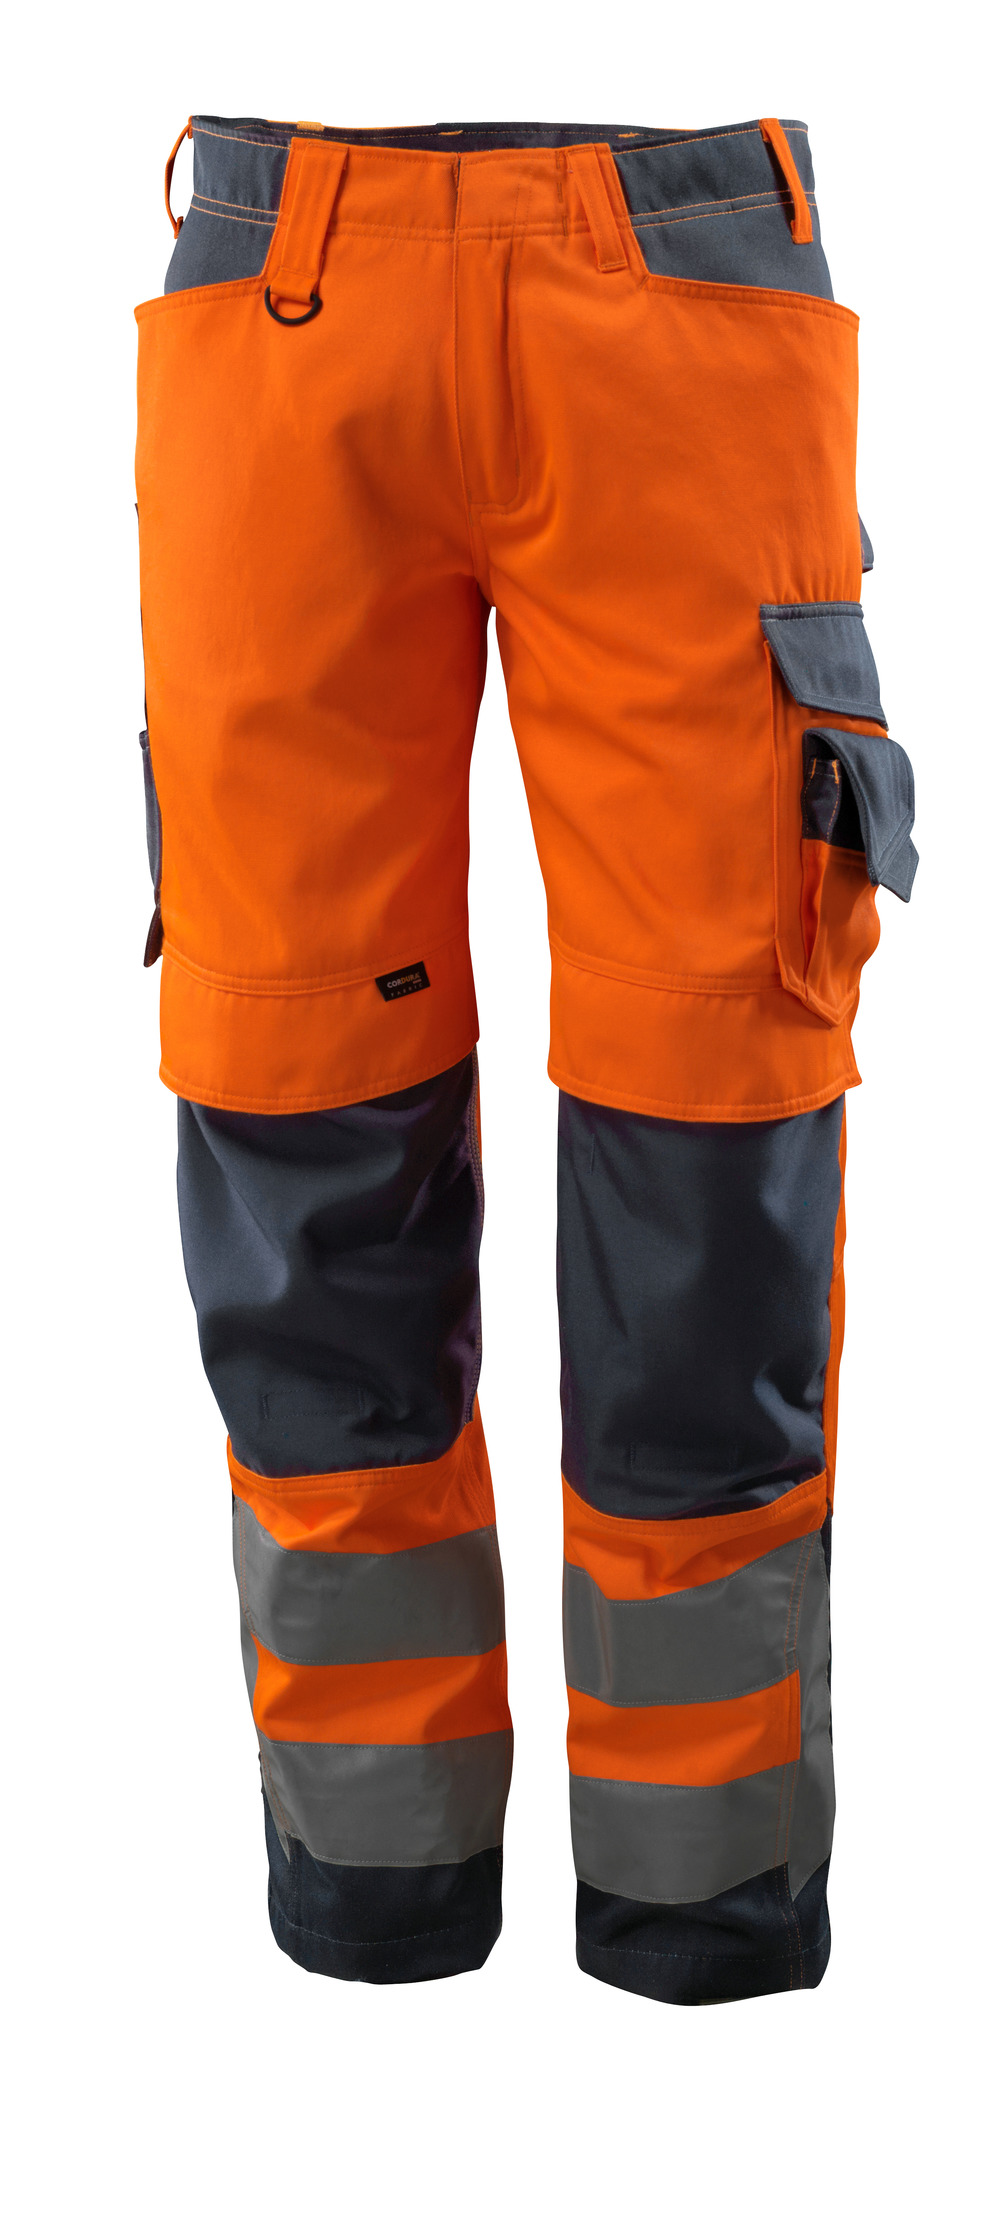 MASCOT-Warnschutz, Warn-Bund-Hose, Kendal,  76 cm, 290 g/m², orange/schwarzblau

